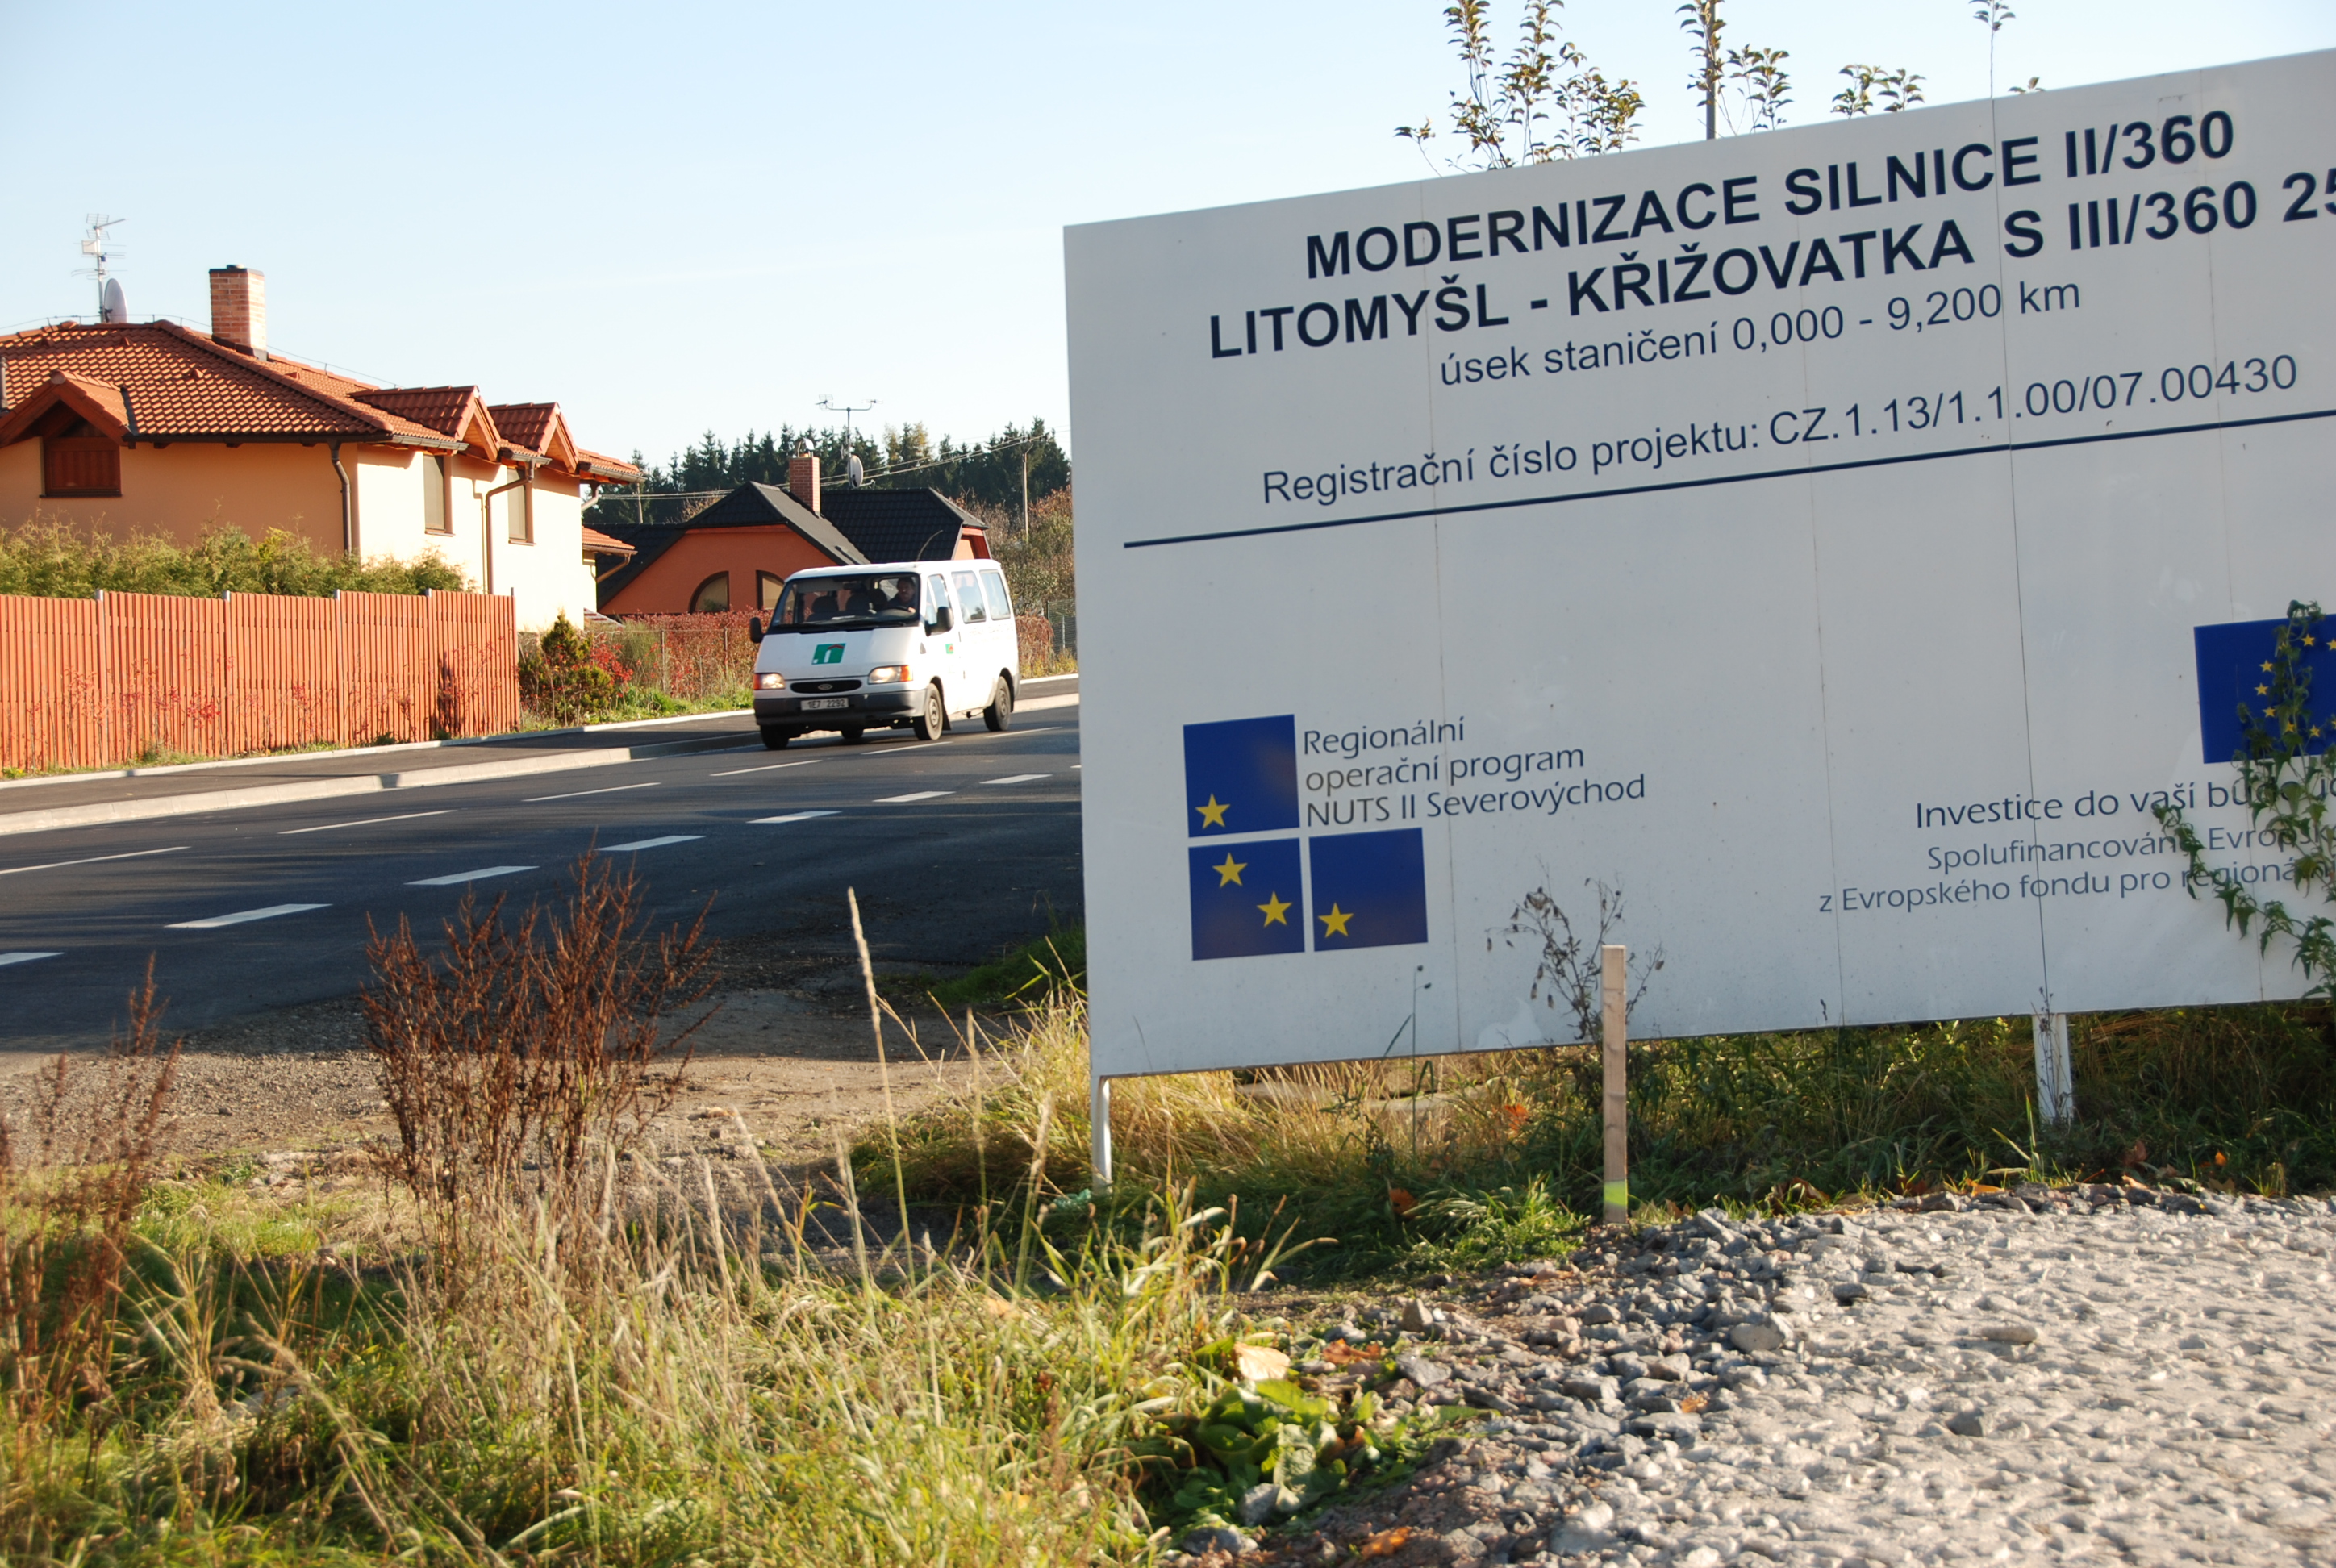 Modernizace silnice II/360 Litomyšl - křižovatka s III/360 25